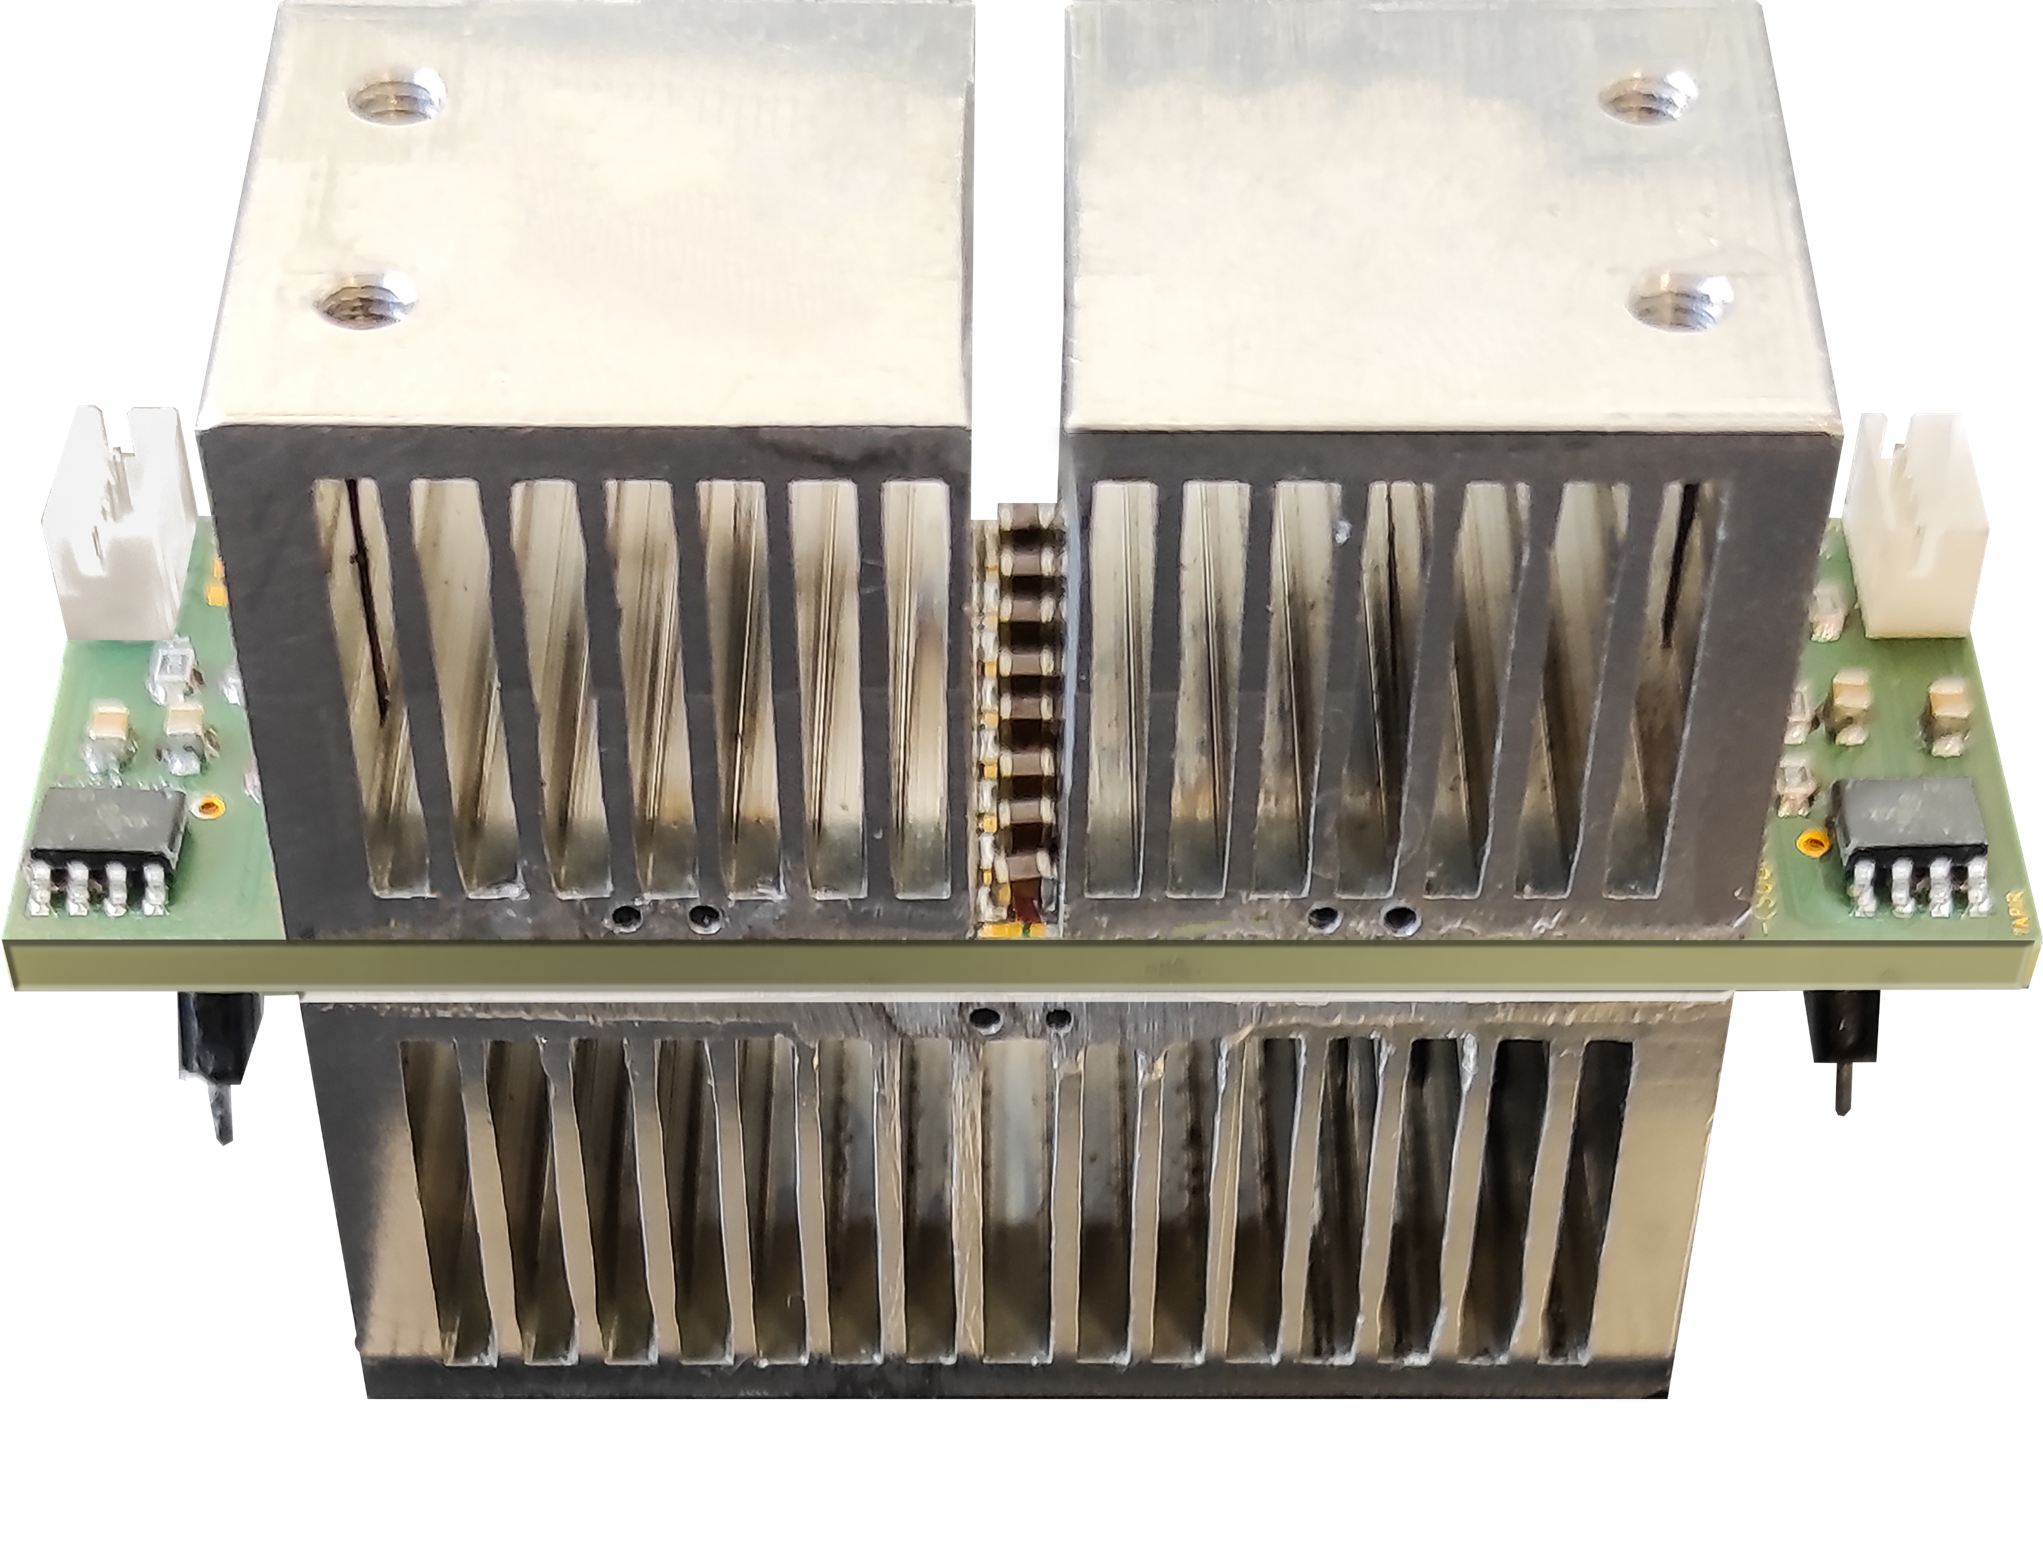 ’originalité du concept développé au sein du laboratoire G2Elab repose sur une intégration astucieuse de puces d'un semi-conducteur (transistor) dans un circuit électronique (PCB)